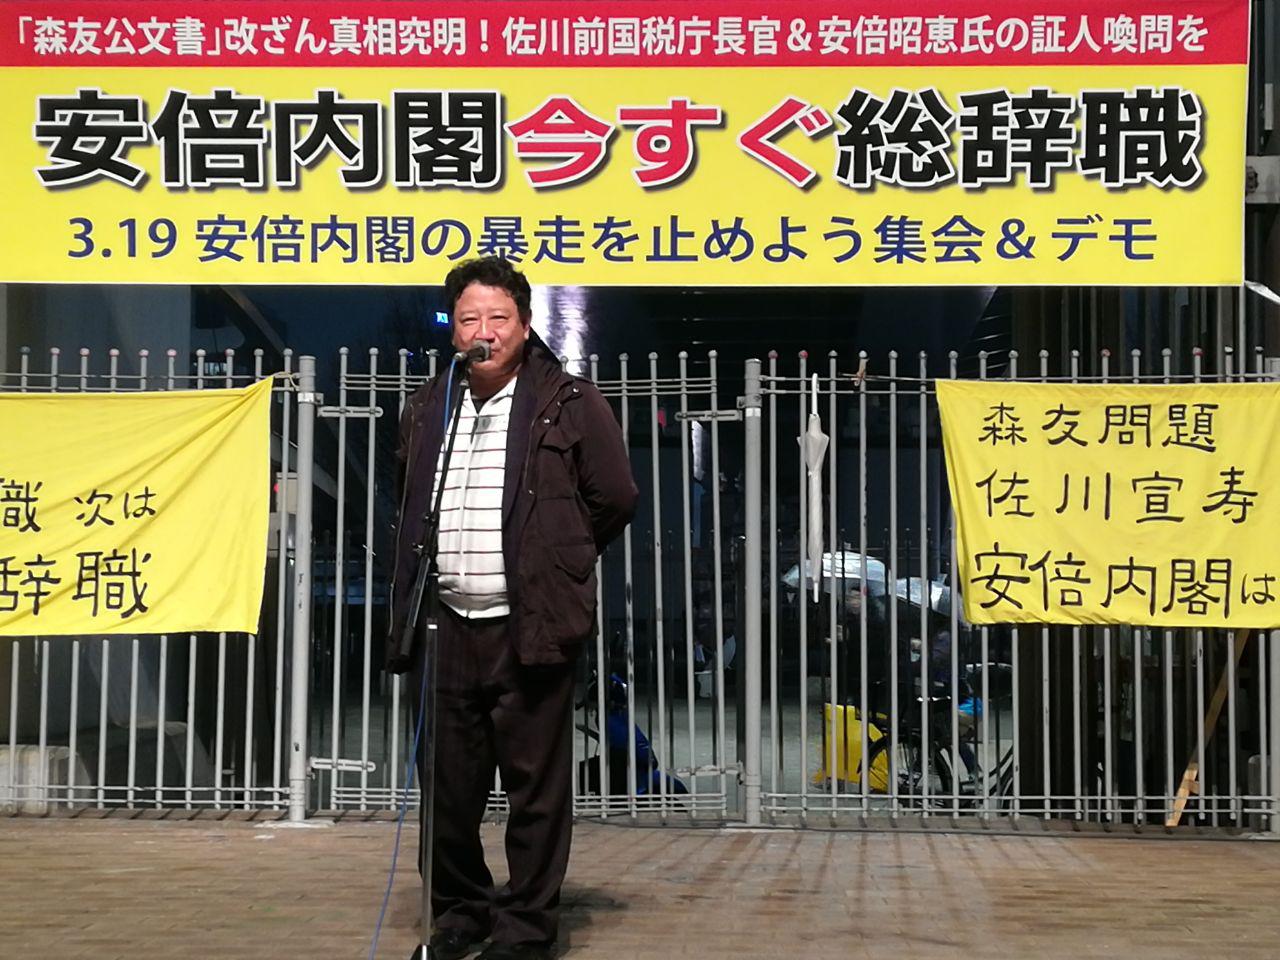 지난 19일 나고야에서 열린 '아베정권 폭주를 막는 공동행동' 집회에서 헌법학자인 이지마 교수는 아베 정권을 두고 "위헌 정권"이라고 비판했다. 